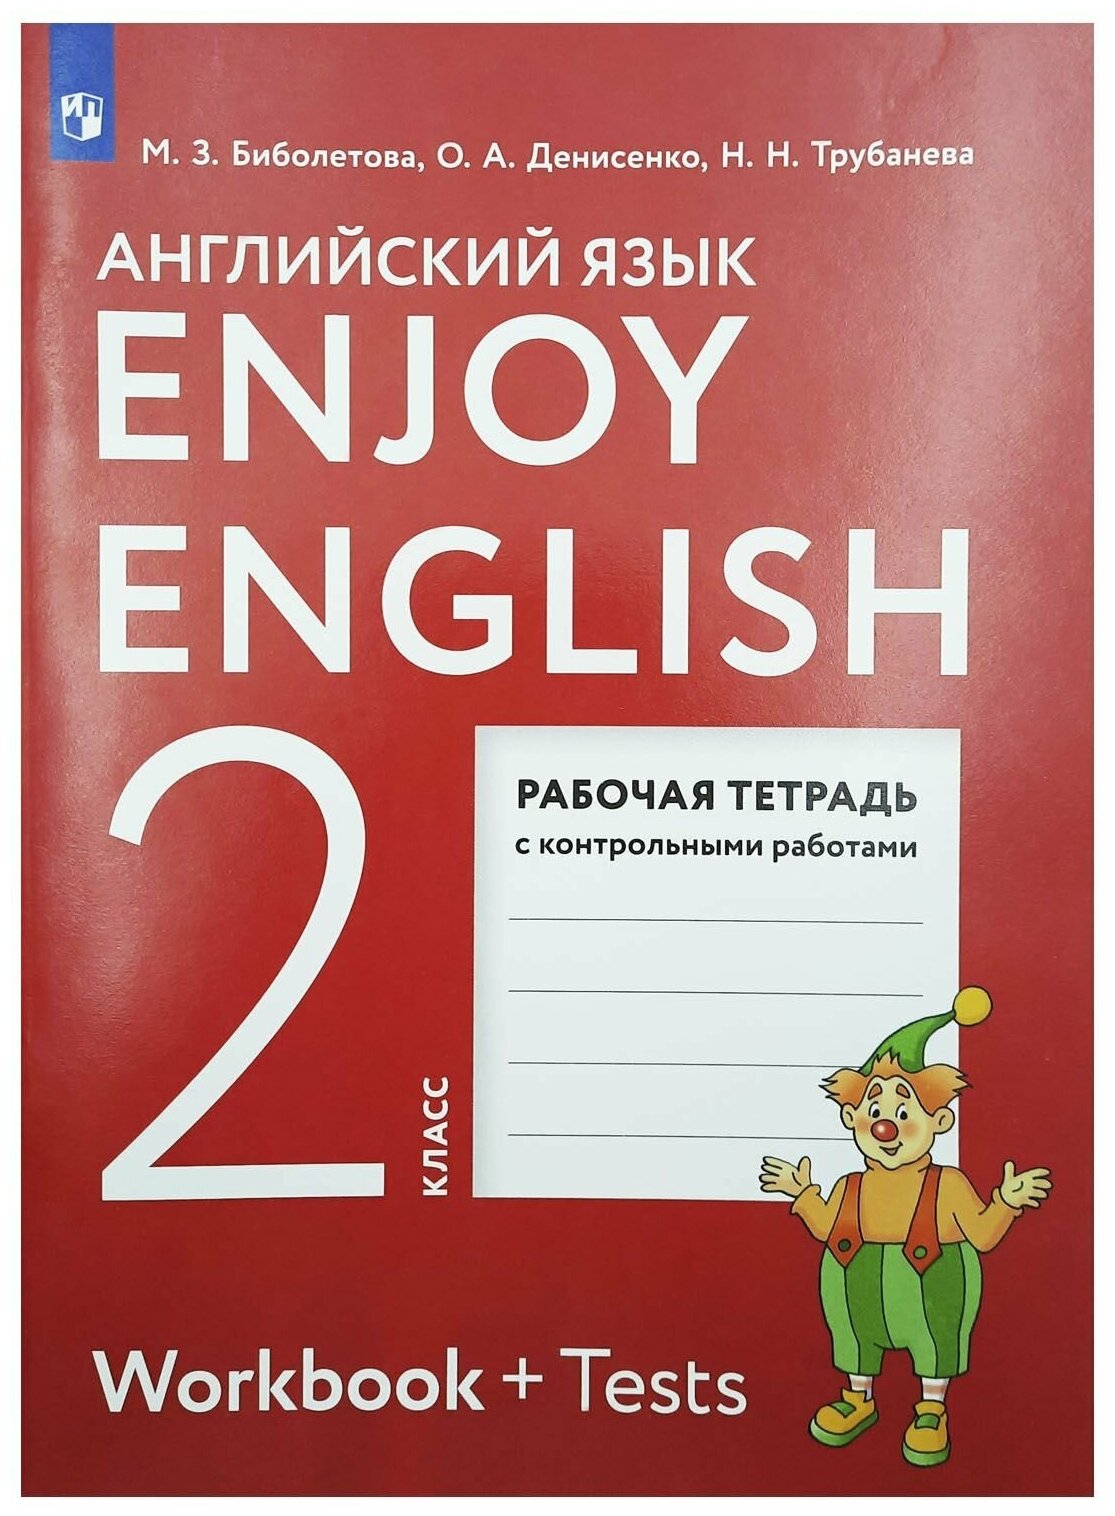 Enjoy English. Английский язык с удовольствием. Рабочая тетрадь с контрольными работами к учебнику для 2 класса общеобразовательных учреждений - фотография № 1